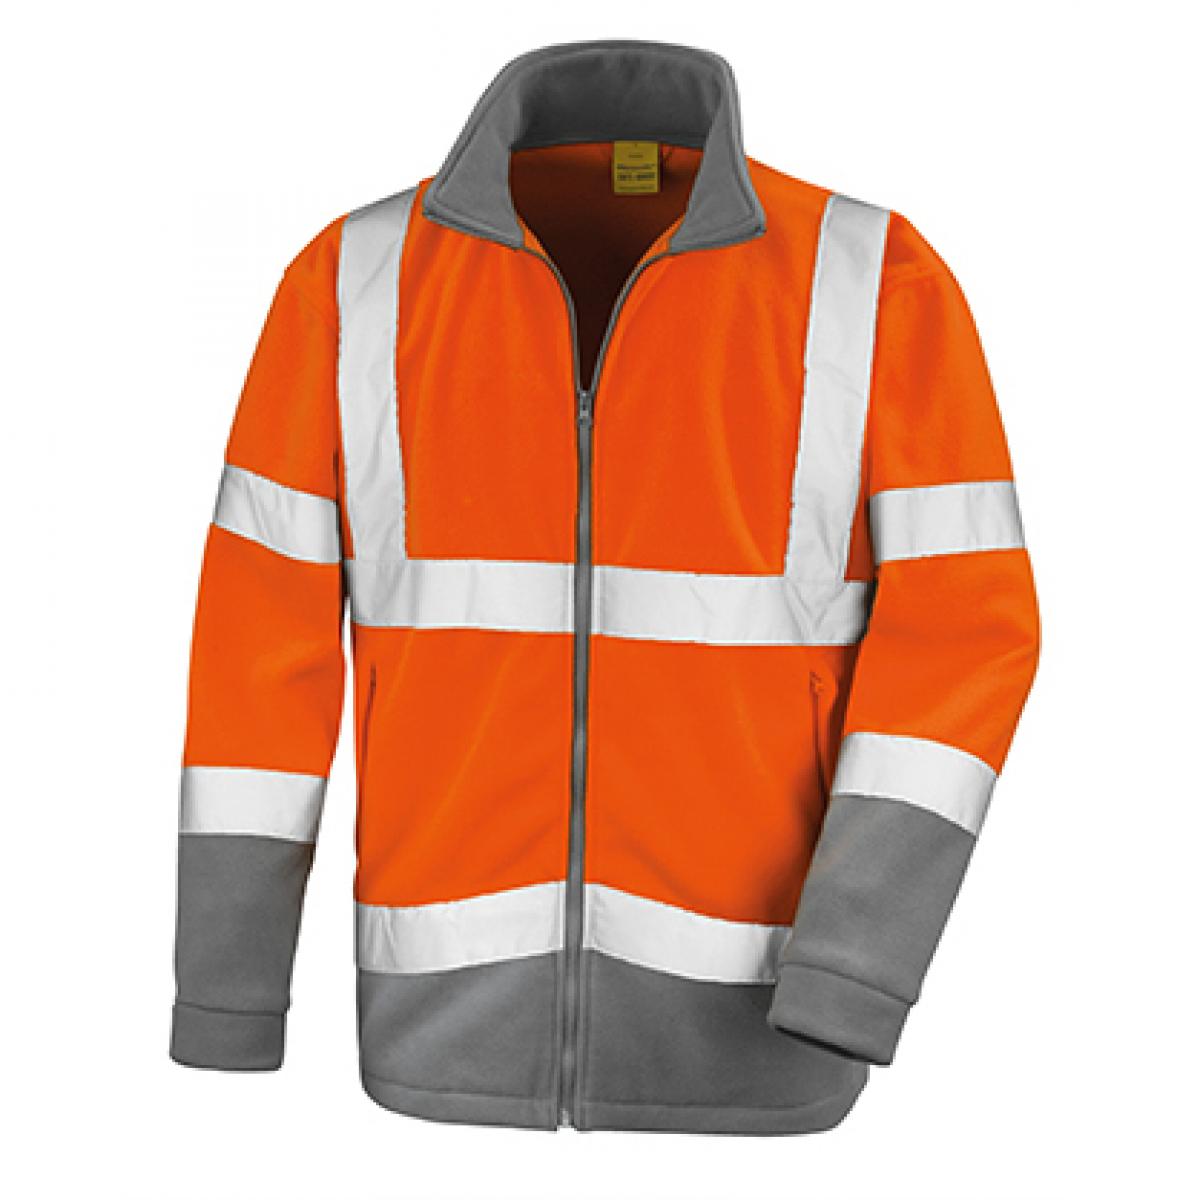 Hersteller: Result Herstellernummer: R329X Artikelbezeichnung: Safety Microfleece Arbeits Jacke Farbe: Fluorescent Orange/Workguard Grey